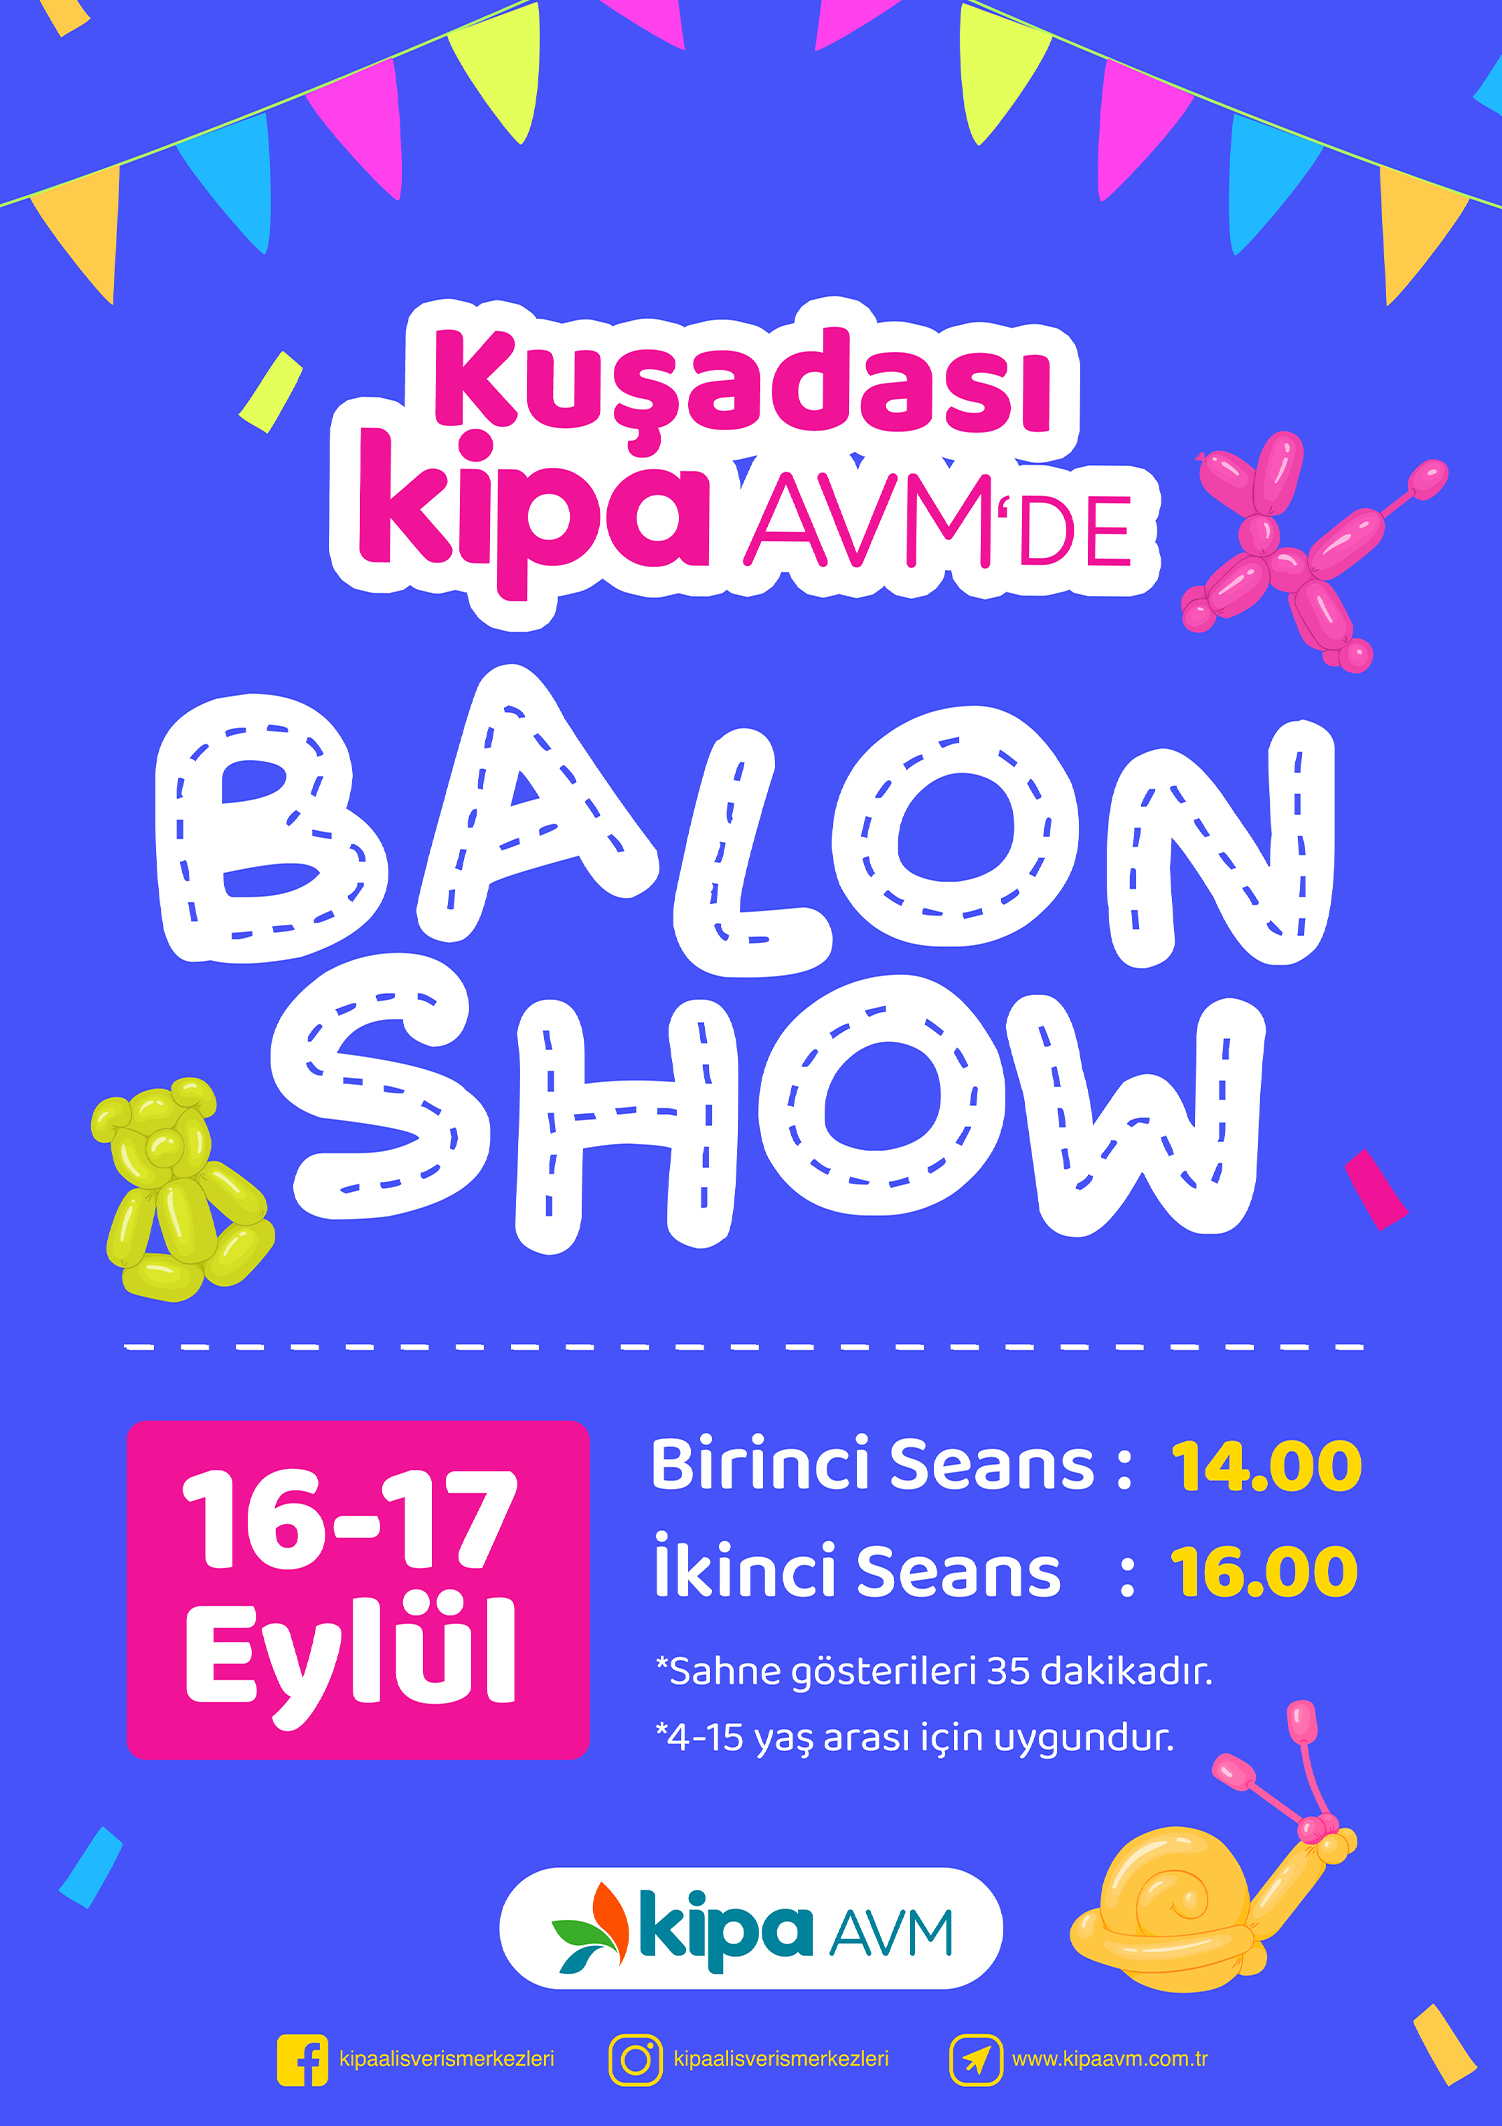 Kuşadası Kipa AVM'de Balon Show Etkinliği!